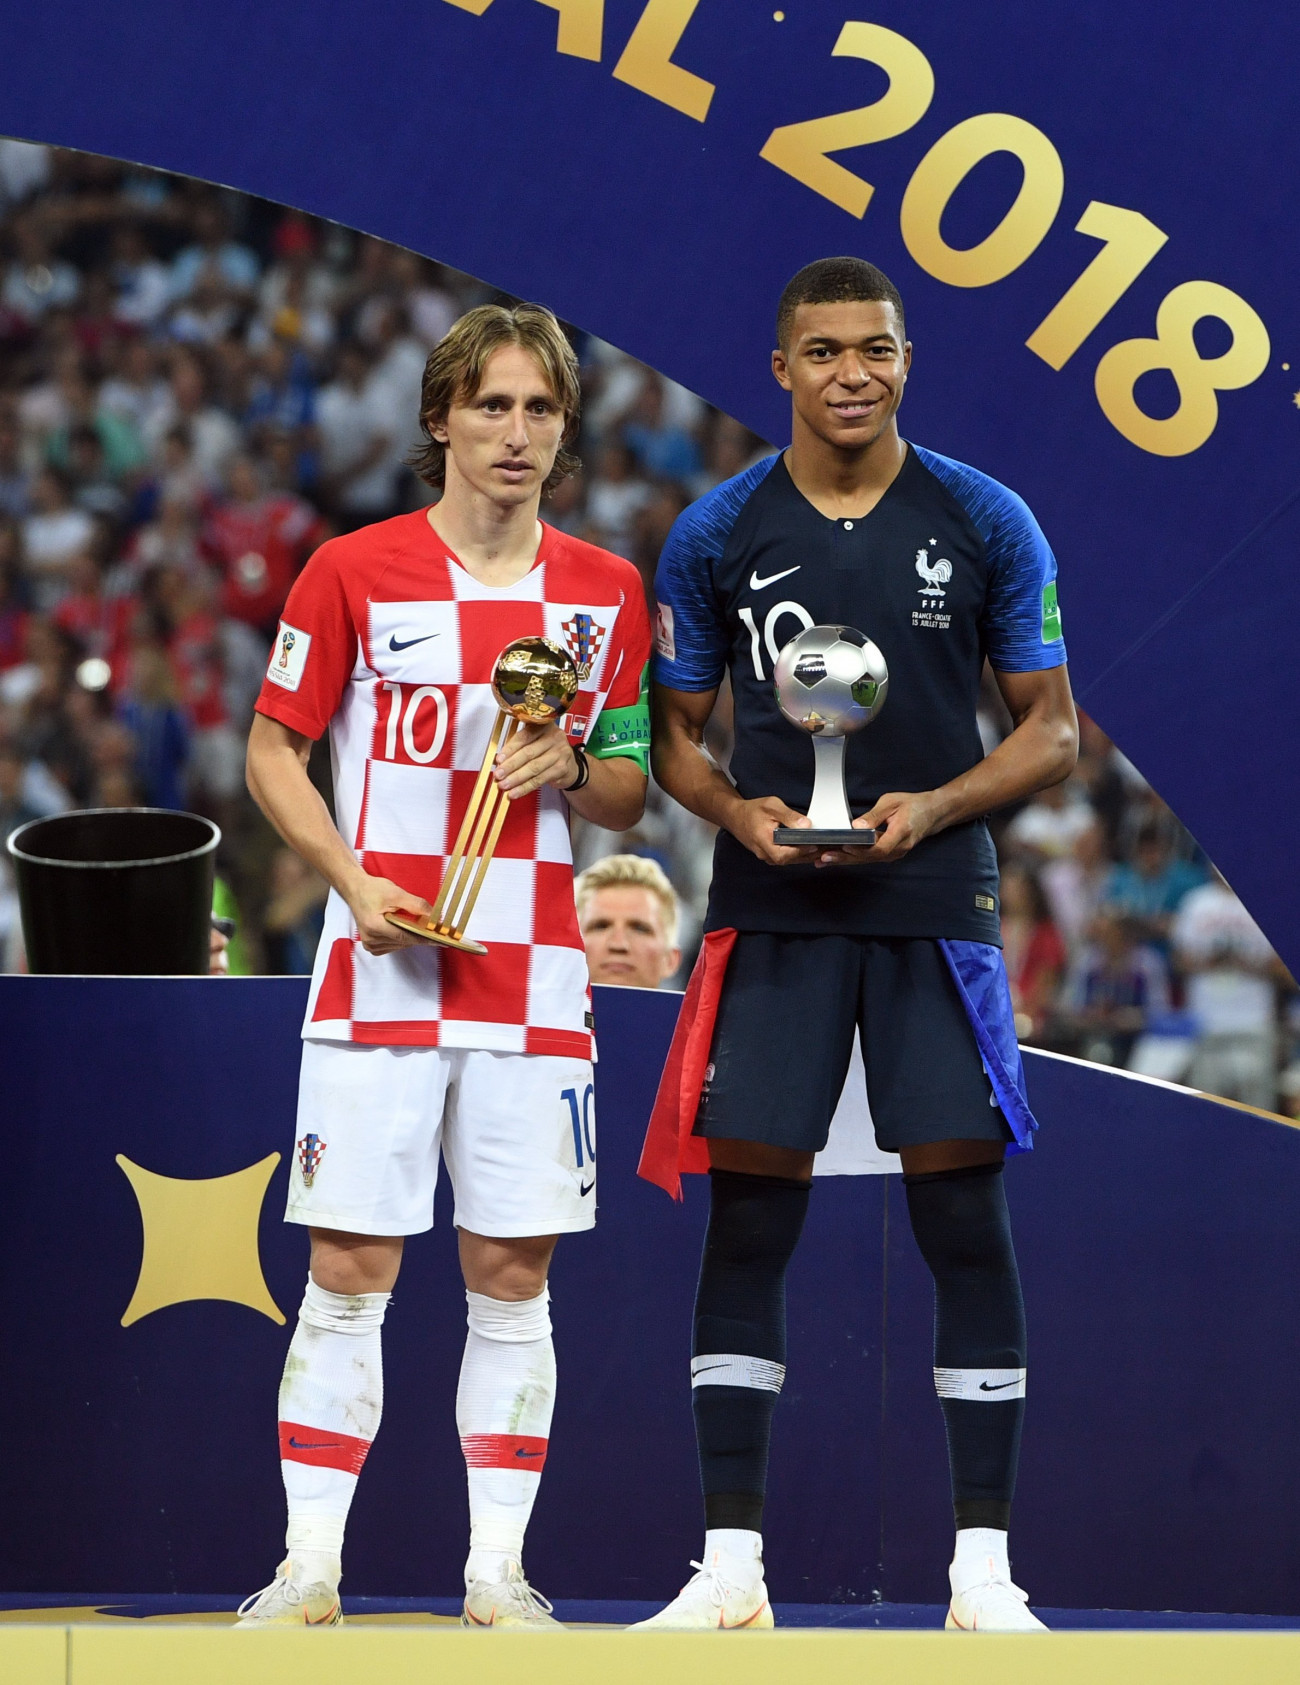 Moszkva, 2018. július 15.
A horvát Luka Modric, az oroszországi labdarúgó-világbajnokság legjobb játékosának járó Aranylabdával (b) és a francia Kylian Mbappe, a torna legjobb fiatal játékosának járó trófeával a Franciaország - Horvátország döntő mérkőzés  után a moszkvai Luzsnyiki Stadionban 2018. július 15-én. Franciaország 4-2-re győzött. (MTI/EPA/Facundo Arrizabalaga)